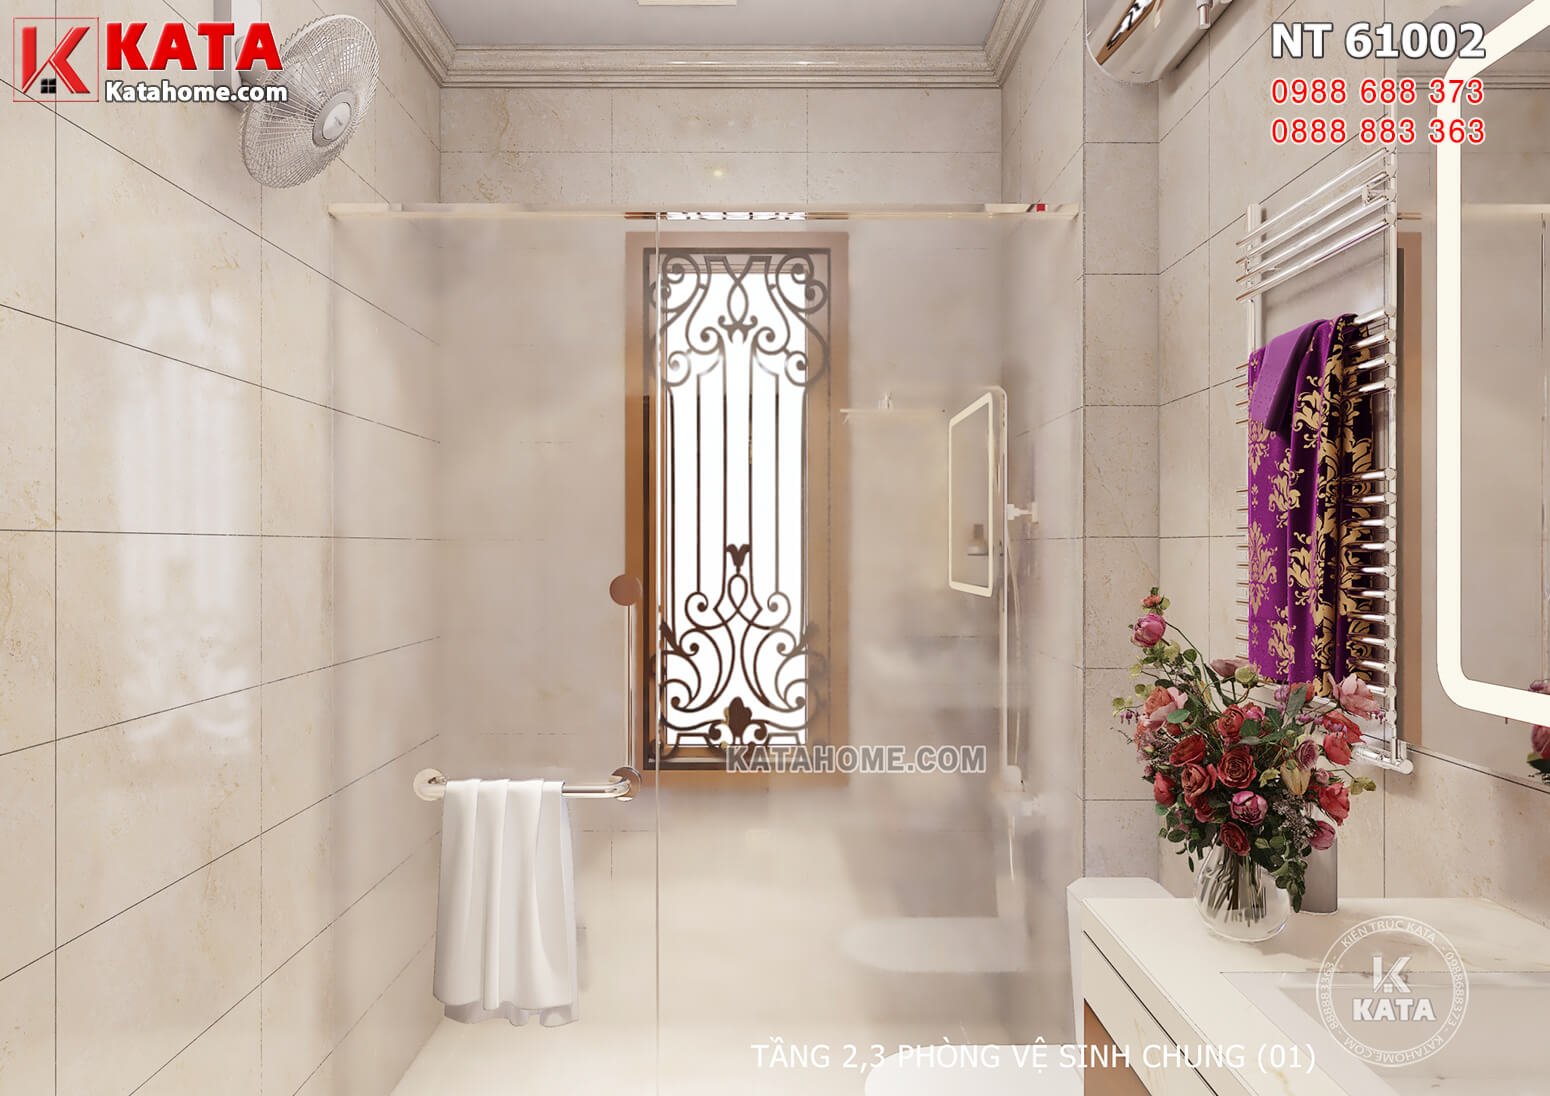 Hình ảnh: Khu vực phòng tắm được thiết kế có vách ngăn tránh bẩn cho không gian còn lại trong phòng vệ sinh